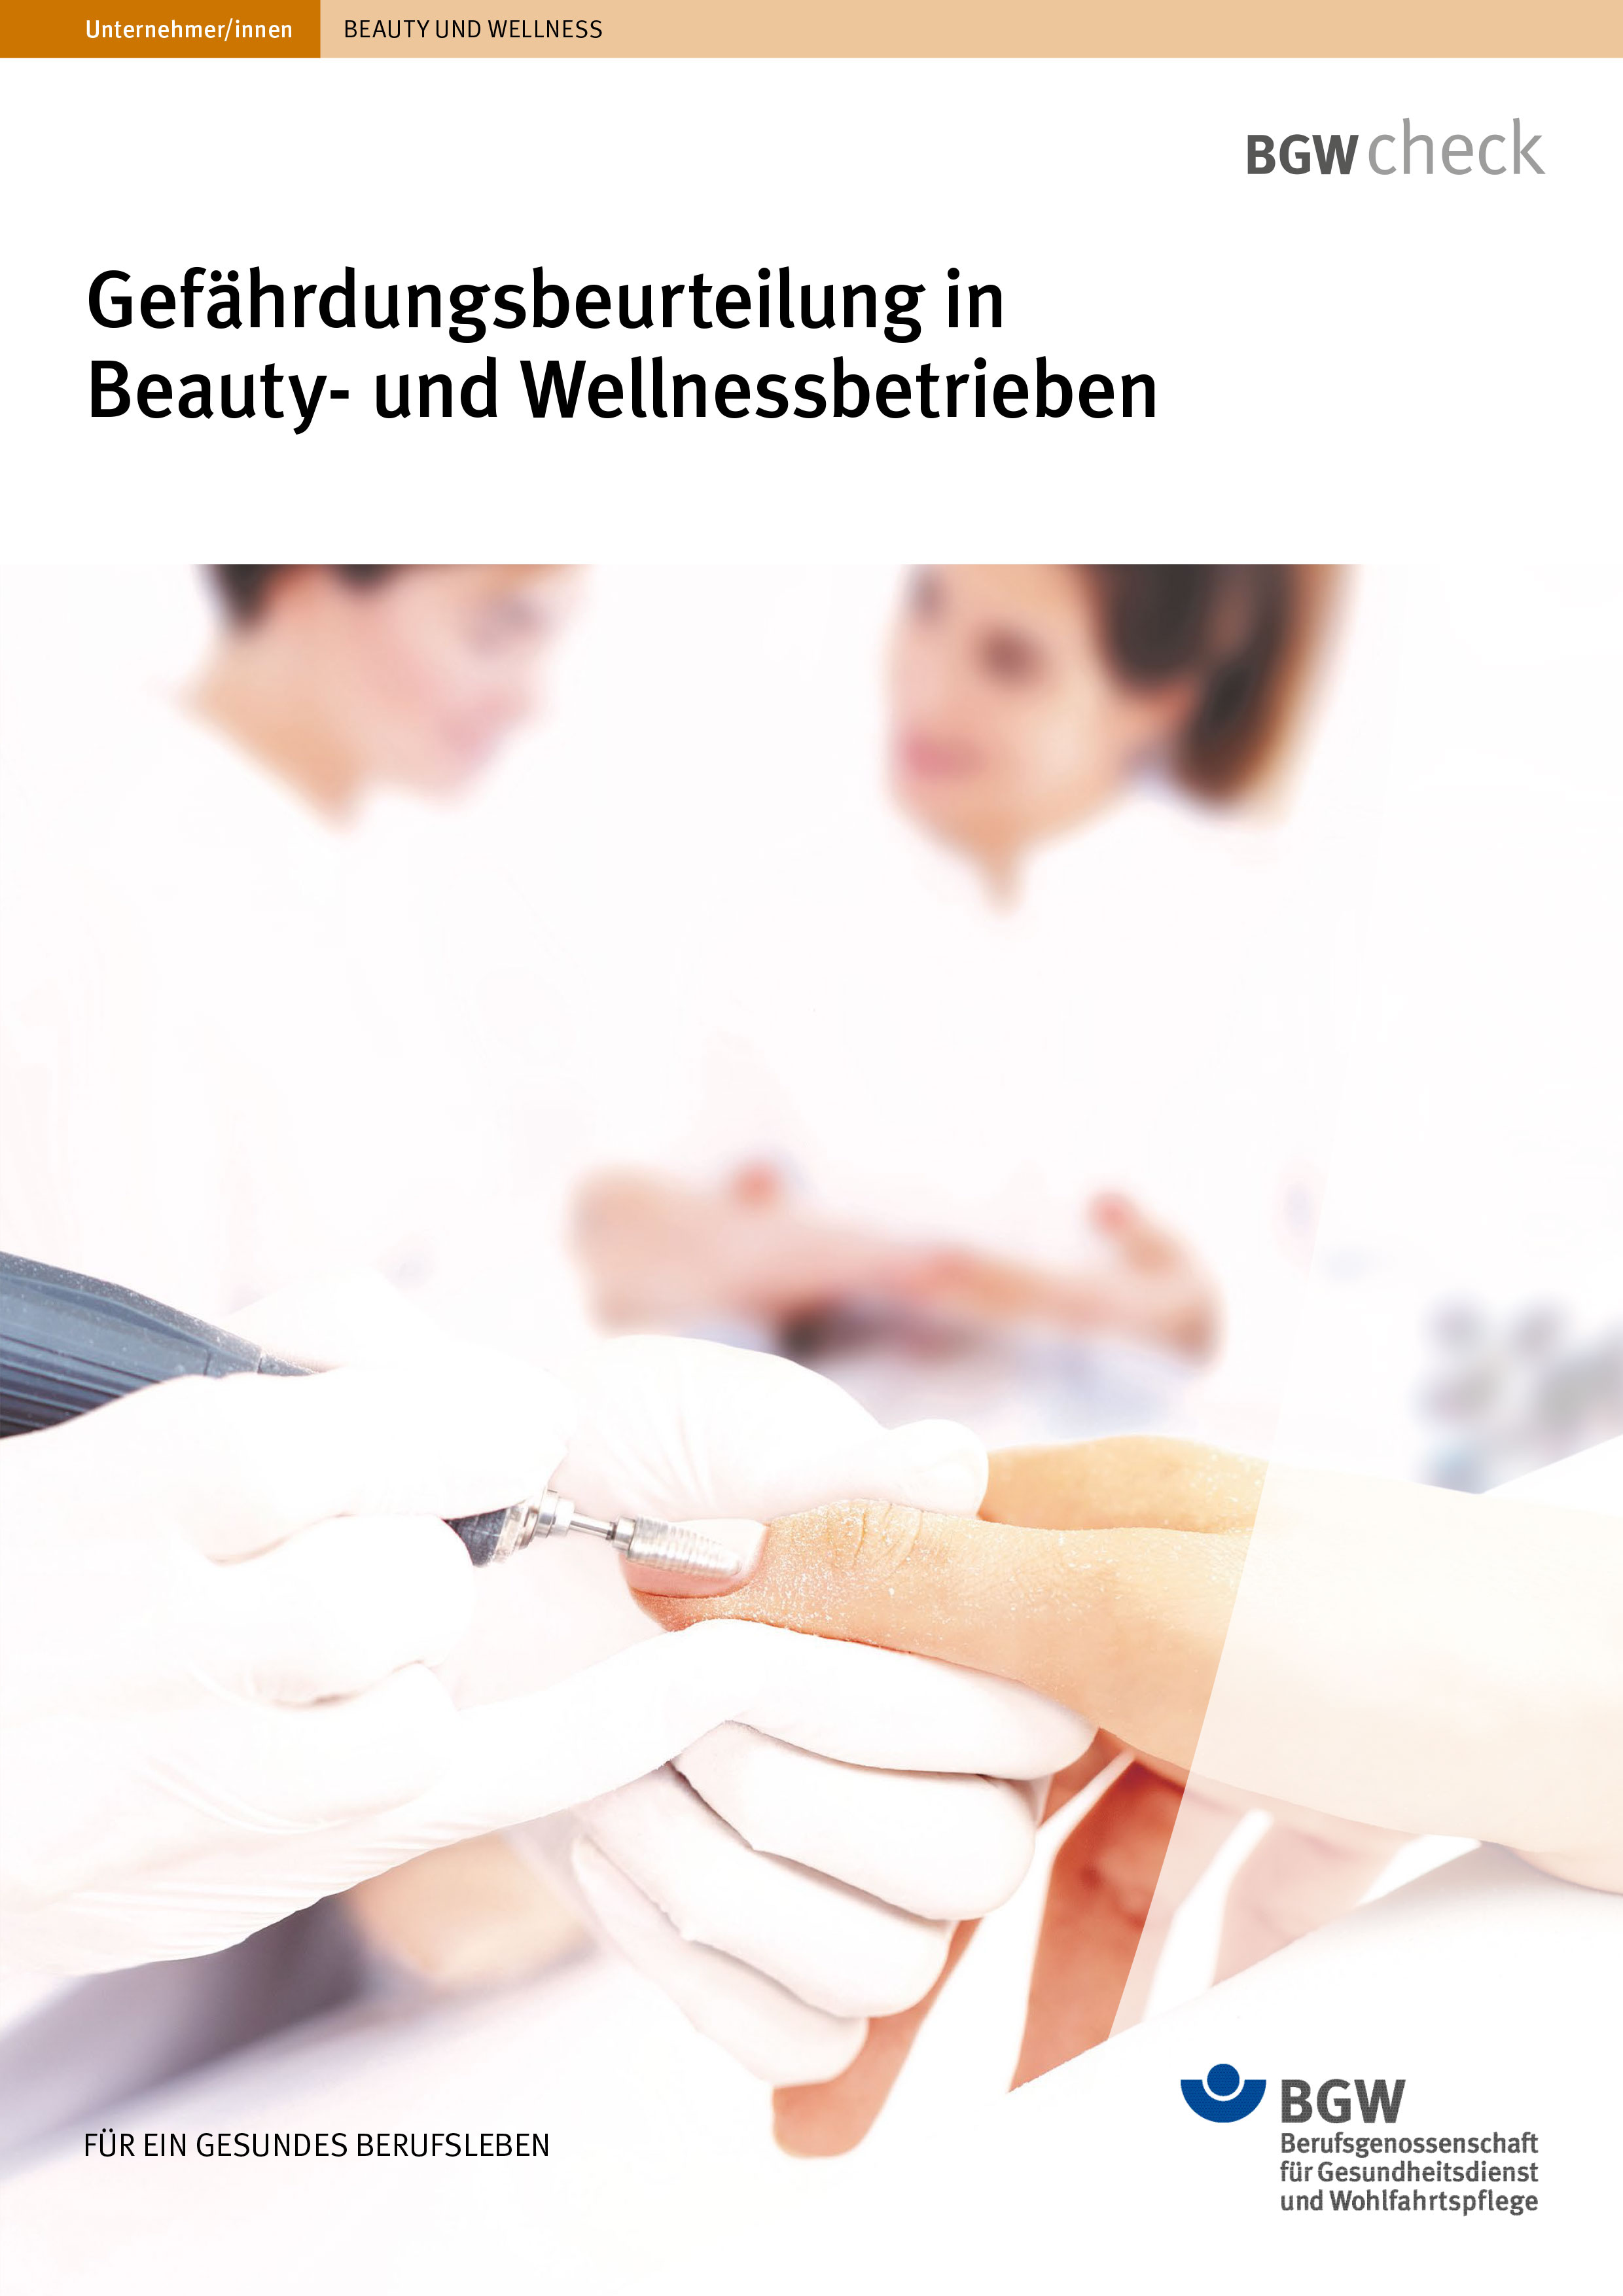 Titel: Gefährdungsbeurteilung in Beauty- und Wellnessbetrieben - farbige Flüssigkeiten in verschienden Behältnissen